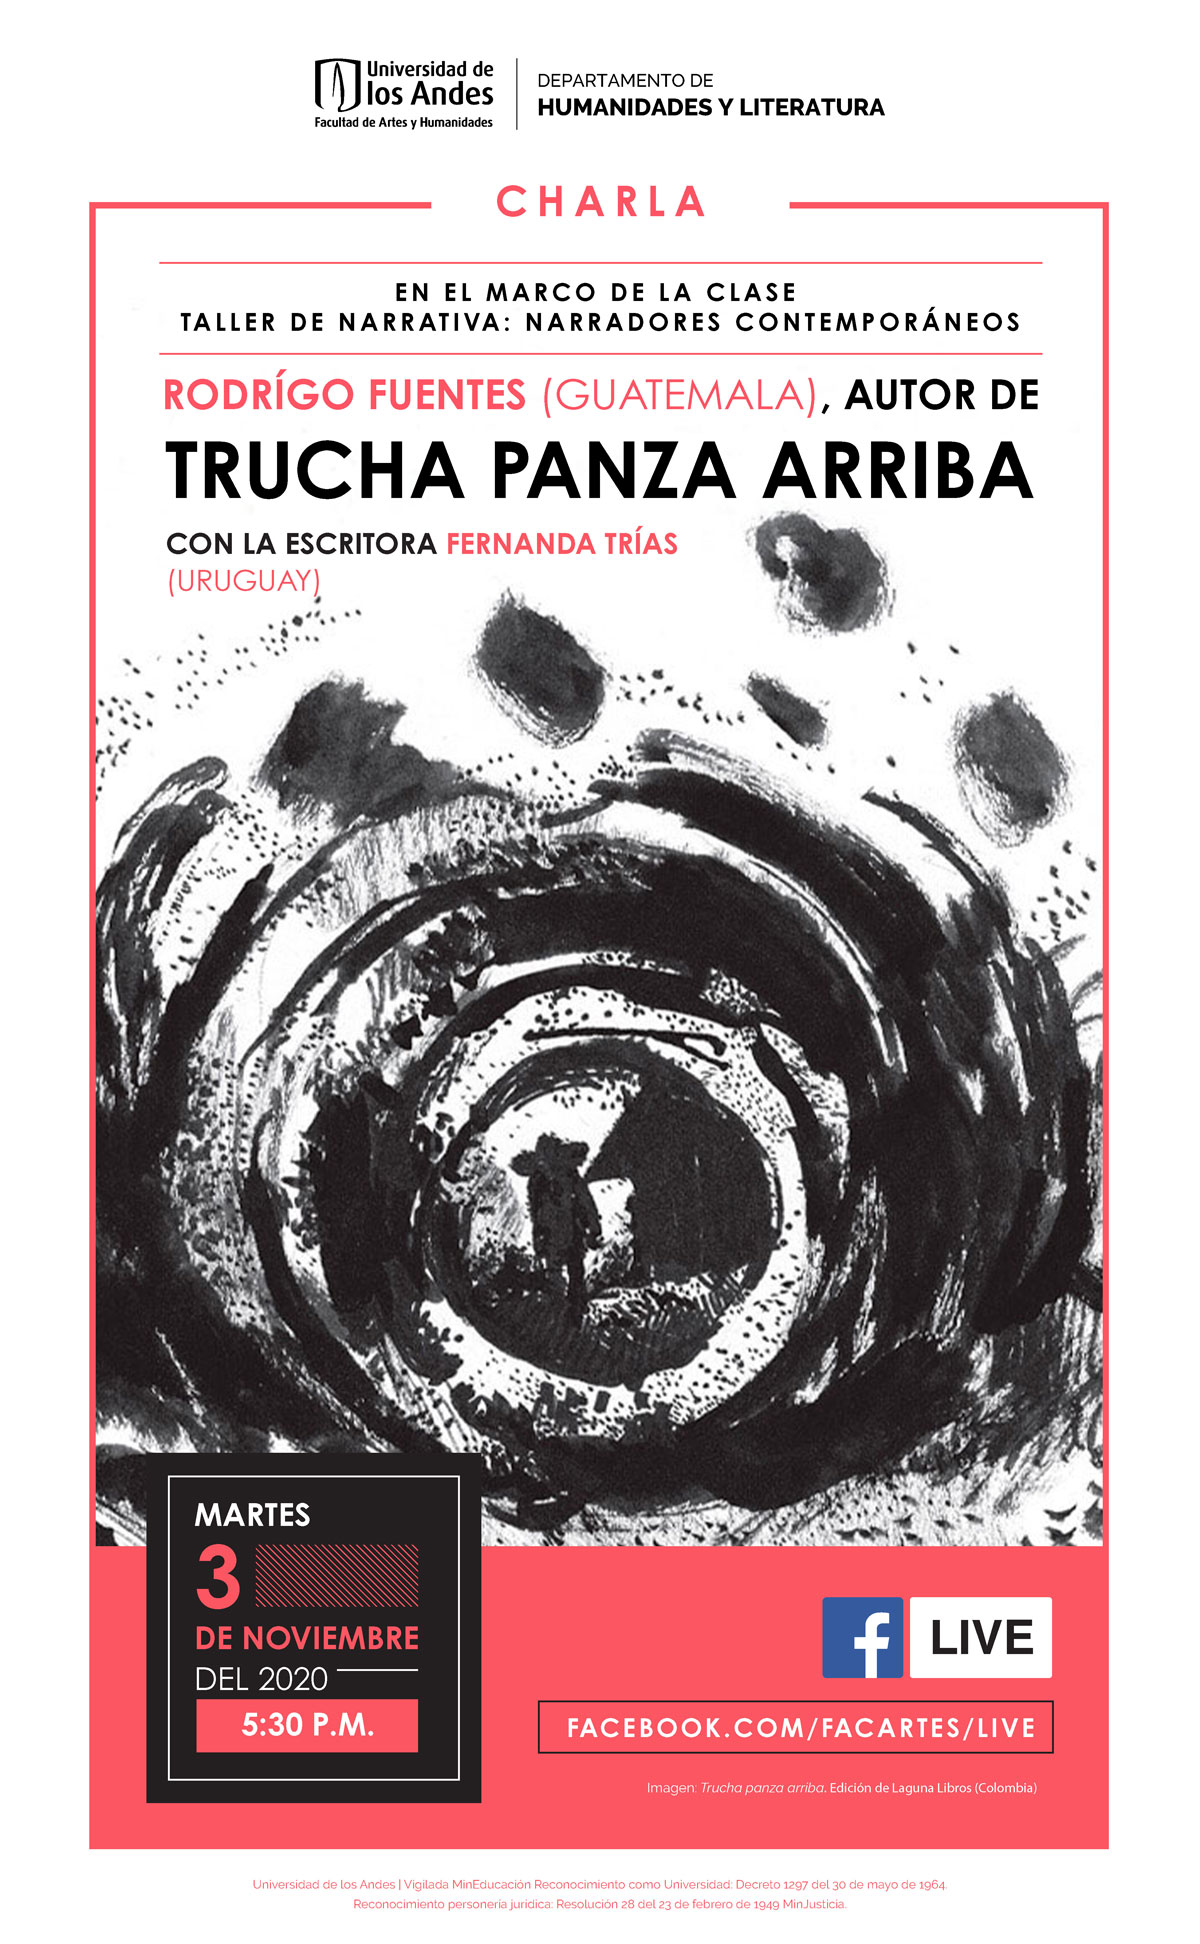 Charla con Rodrigo Fuentes, autor de “Trucha panza arriba”